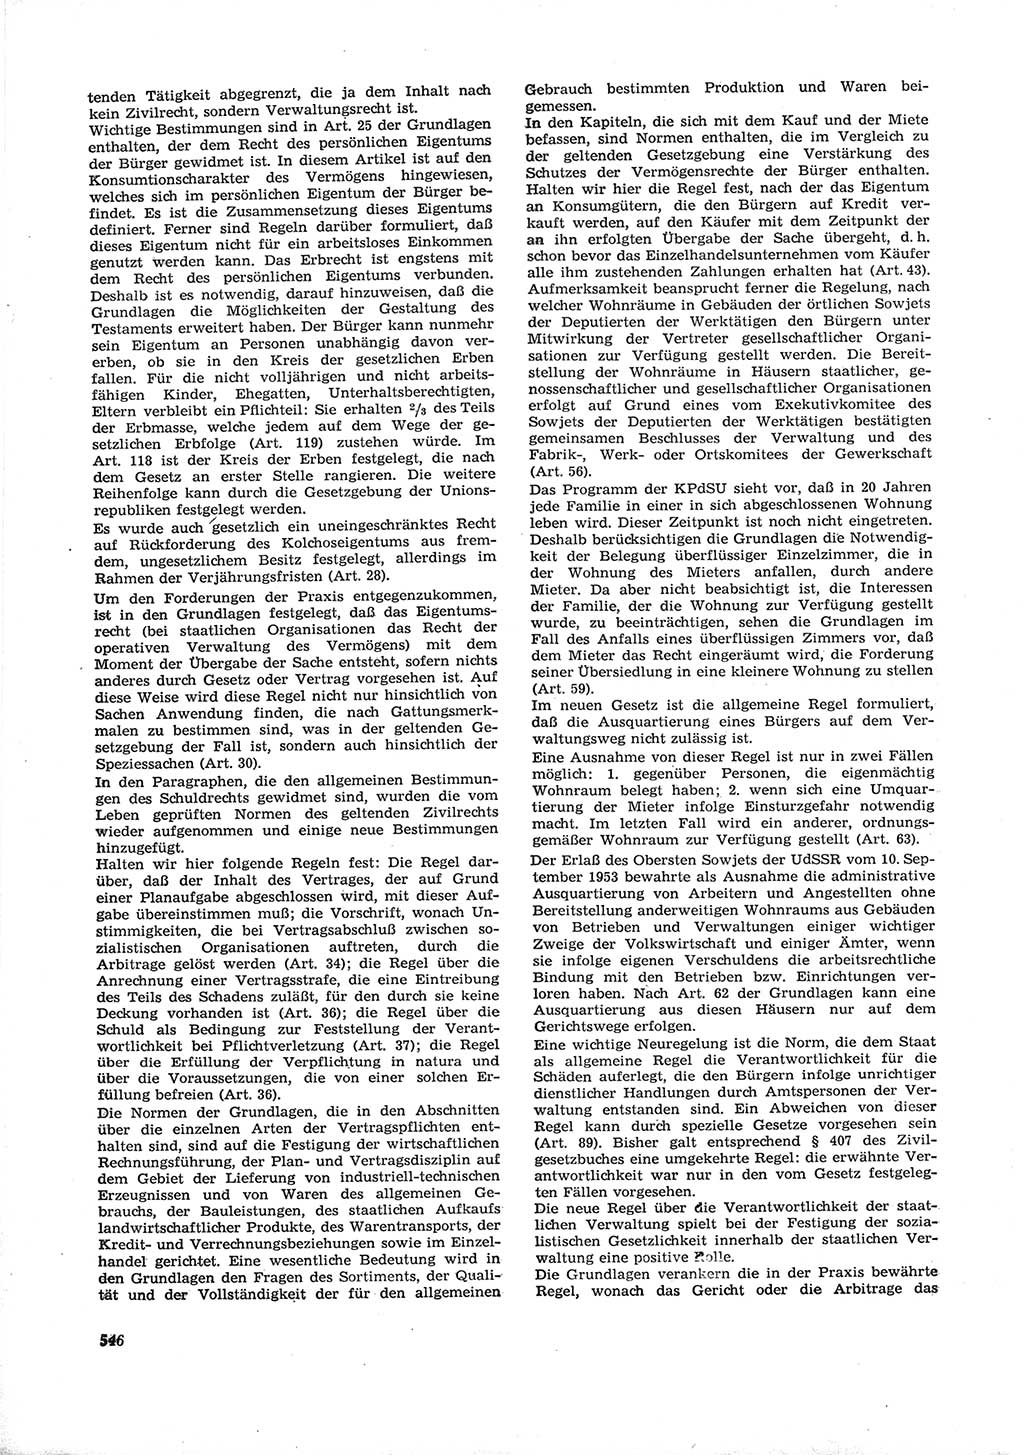 Neue Justiz (NJ), Zeitschrift für Recht und Rechtswissenschaft [Deutsche Demokratische Republik (DDR)], 16. Jahrgang 1962, Seite 546 (NJ DDR 1962, S. 546)